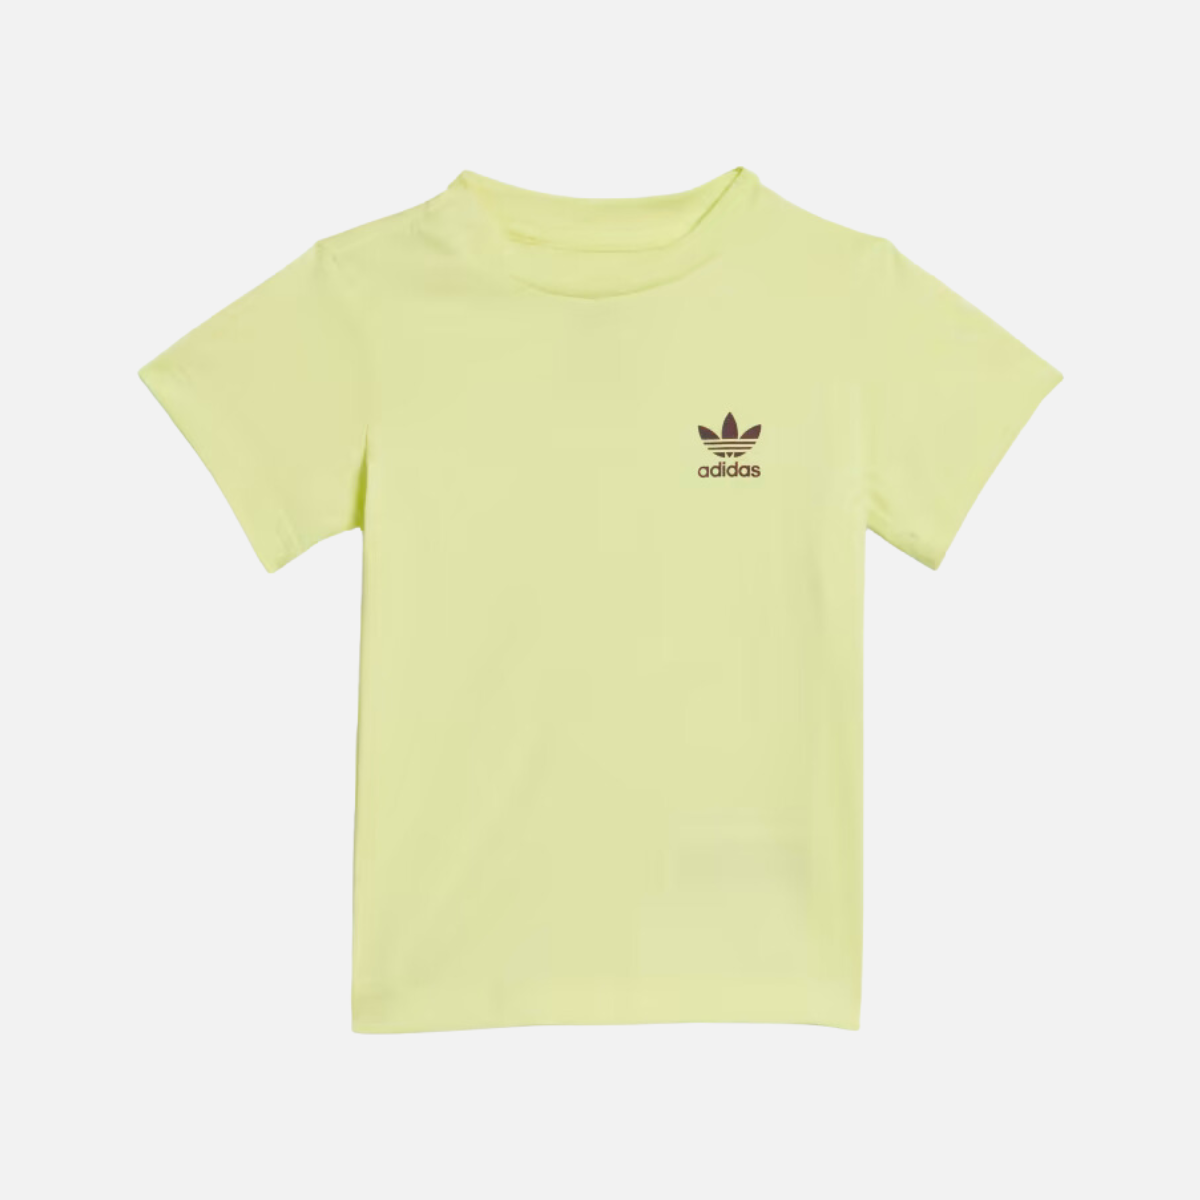 Adidas Shorts And T-shirt Kids Se-Pulse Yellow/Maroon